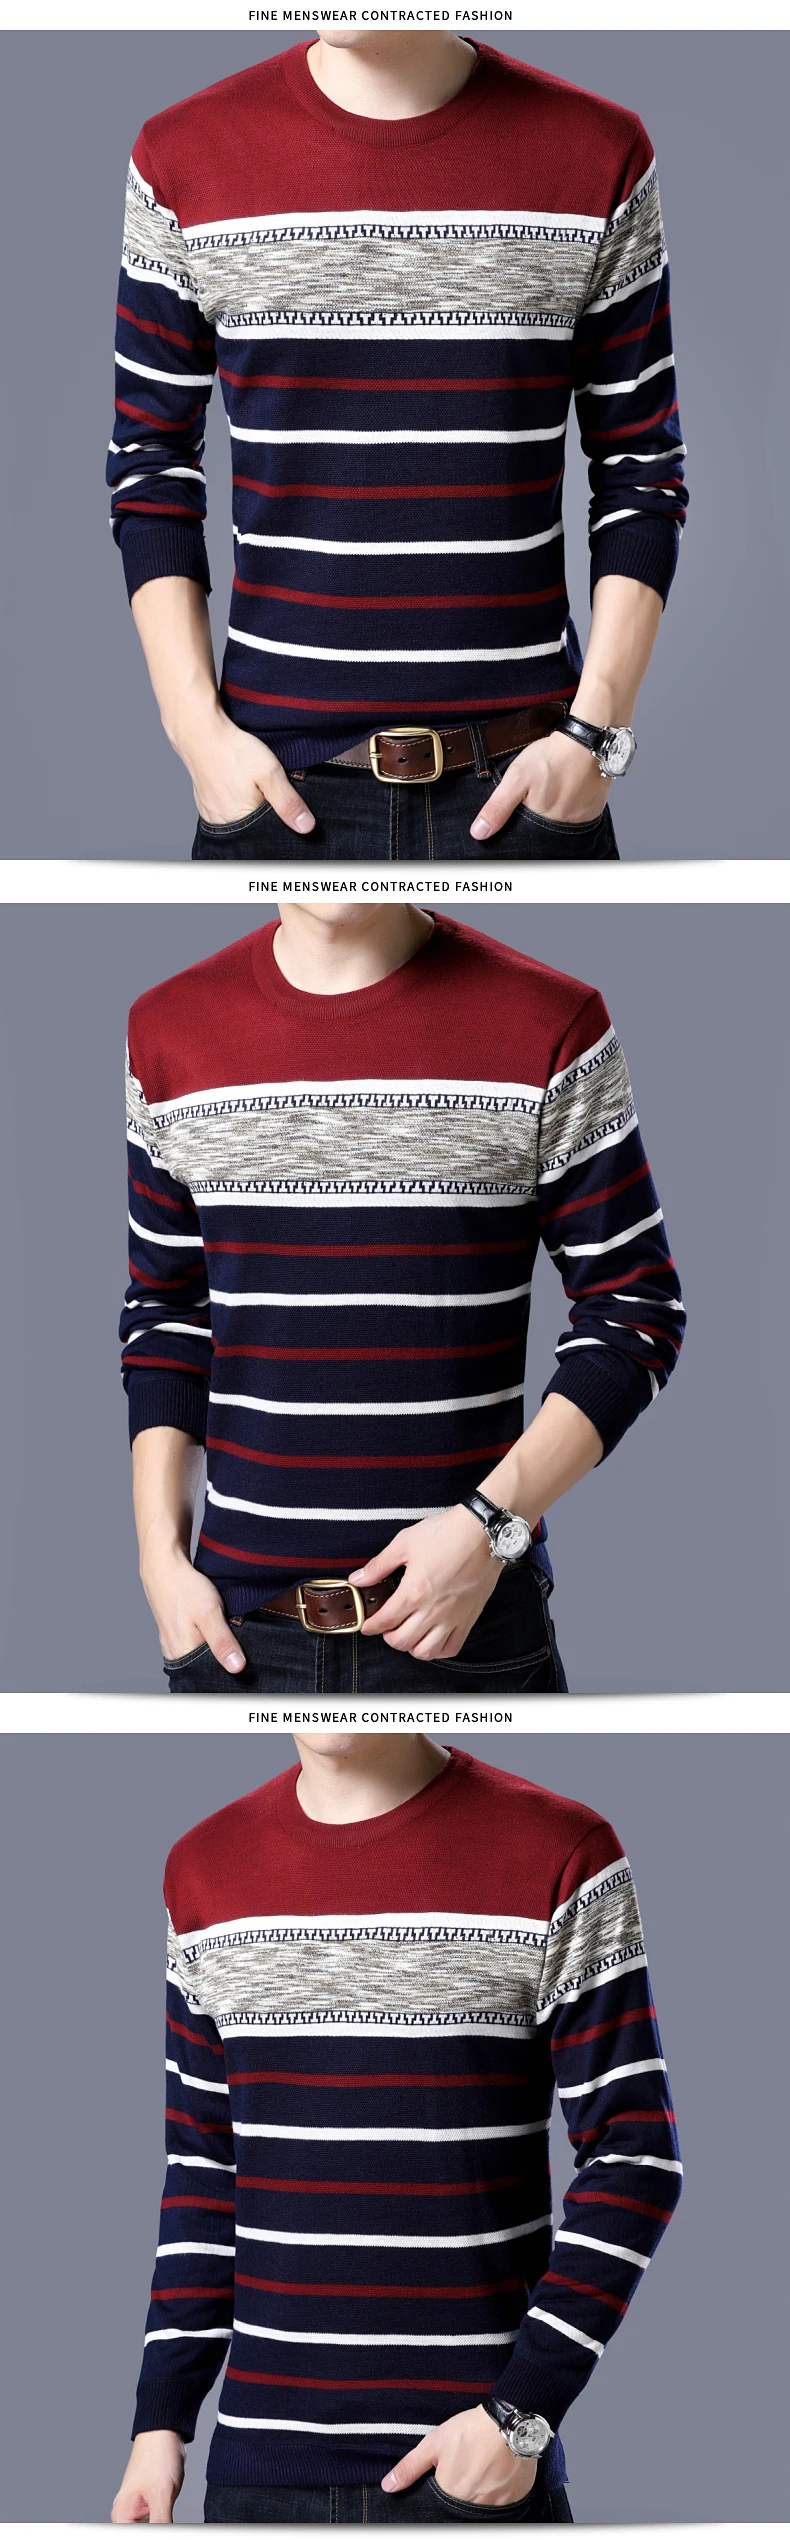 2018 кашемир полосатый для мужчин пуловер oodji свитеры для женщин masculino мужской повседневное Рождество свитер трикотаж плюс размеры рубашк